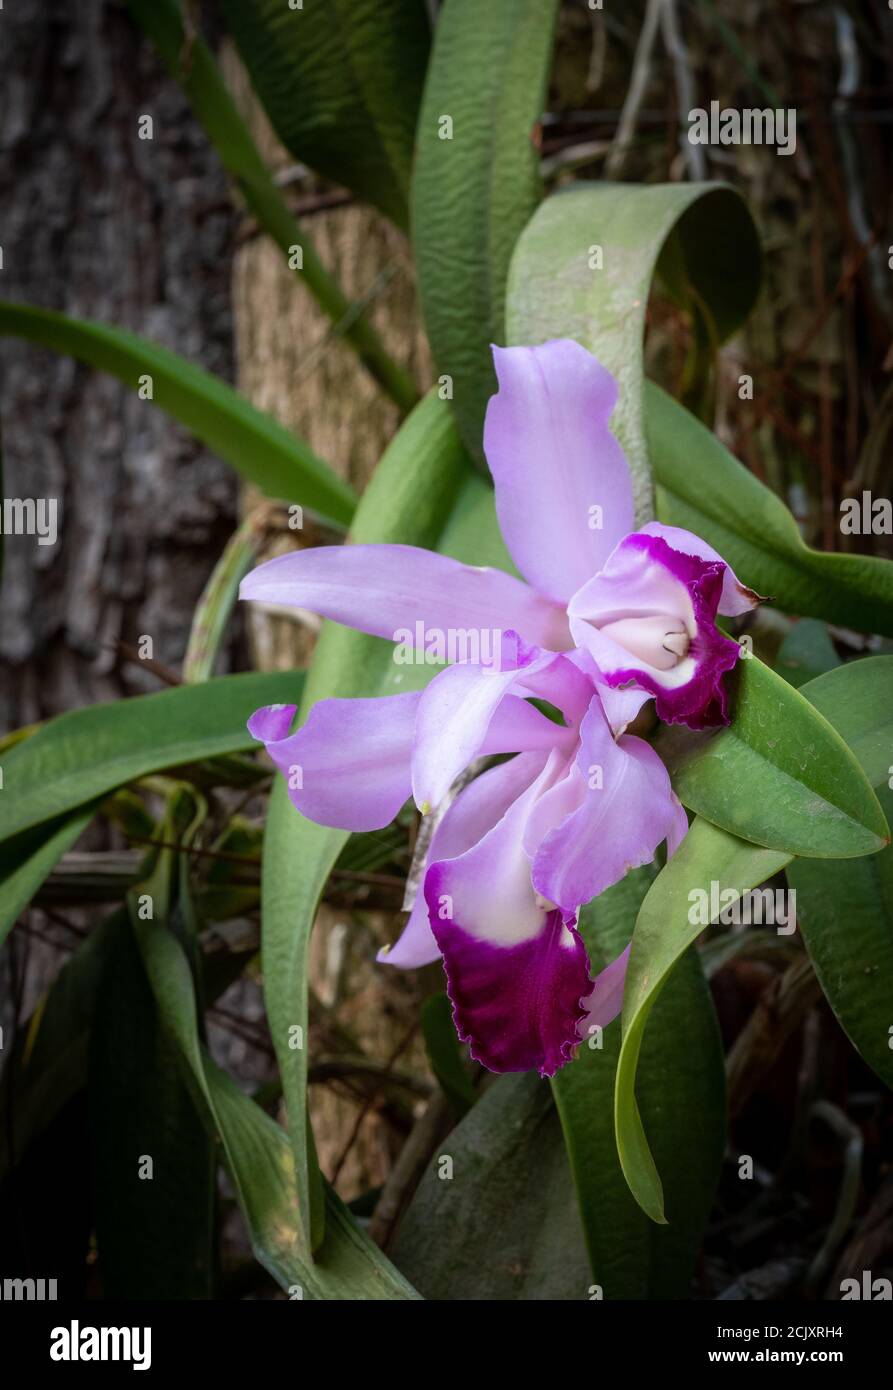 Orquidea natural de cultivo organico y de cuidado personal en un jardin hogareño Stock Photo